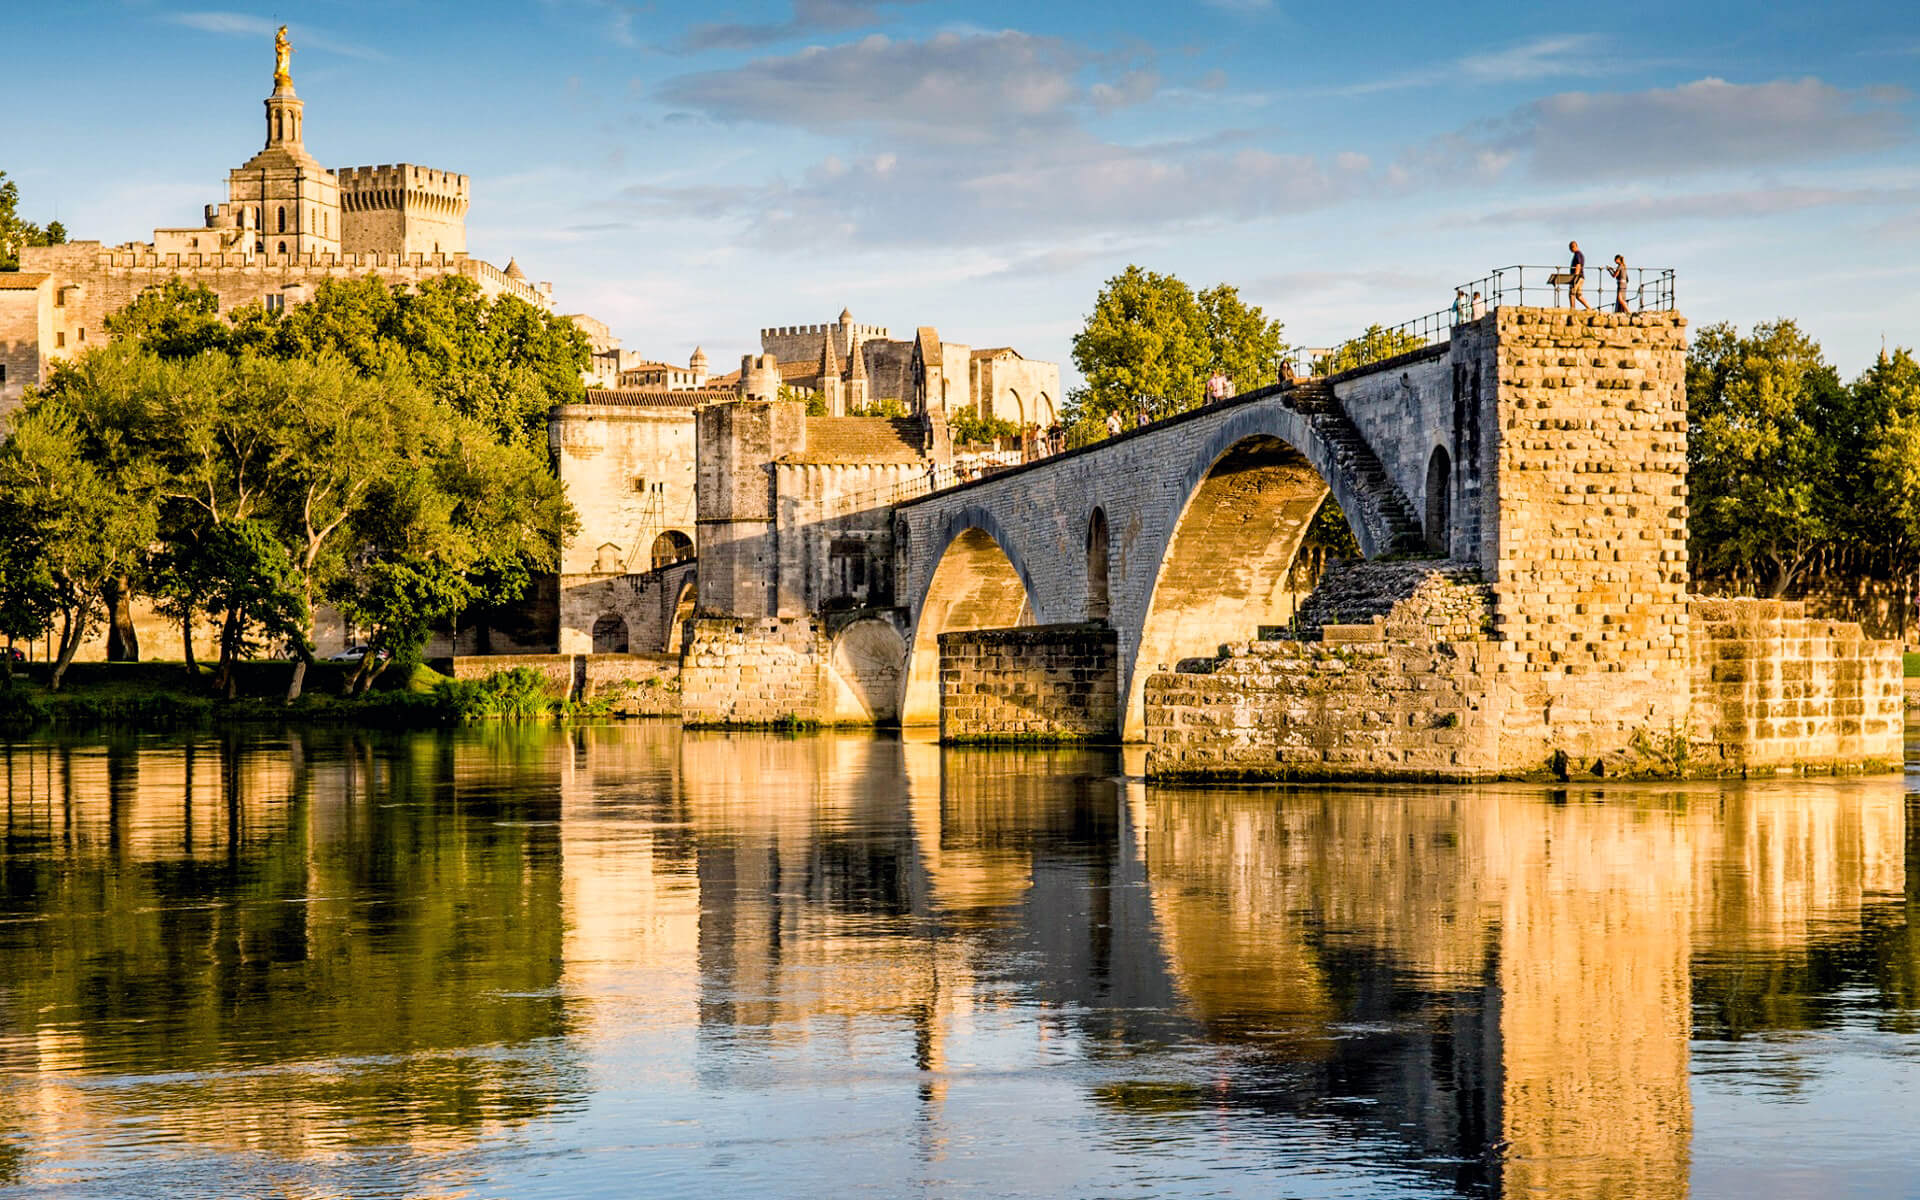 Hướng dẫn du lịch Avignon - Travel S Helper